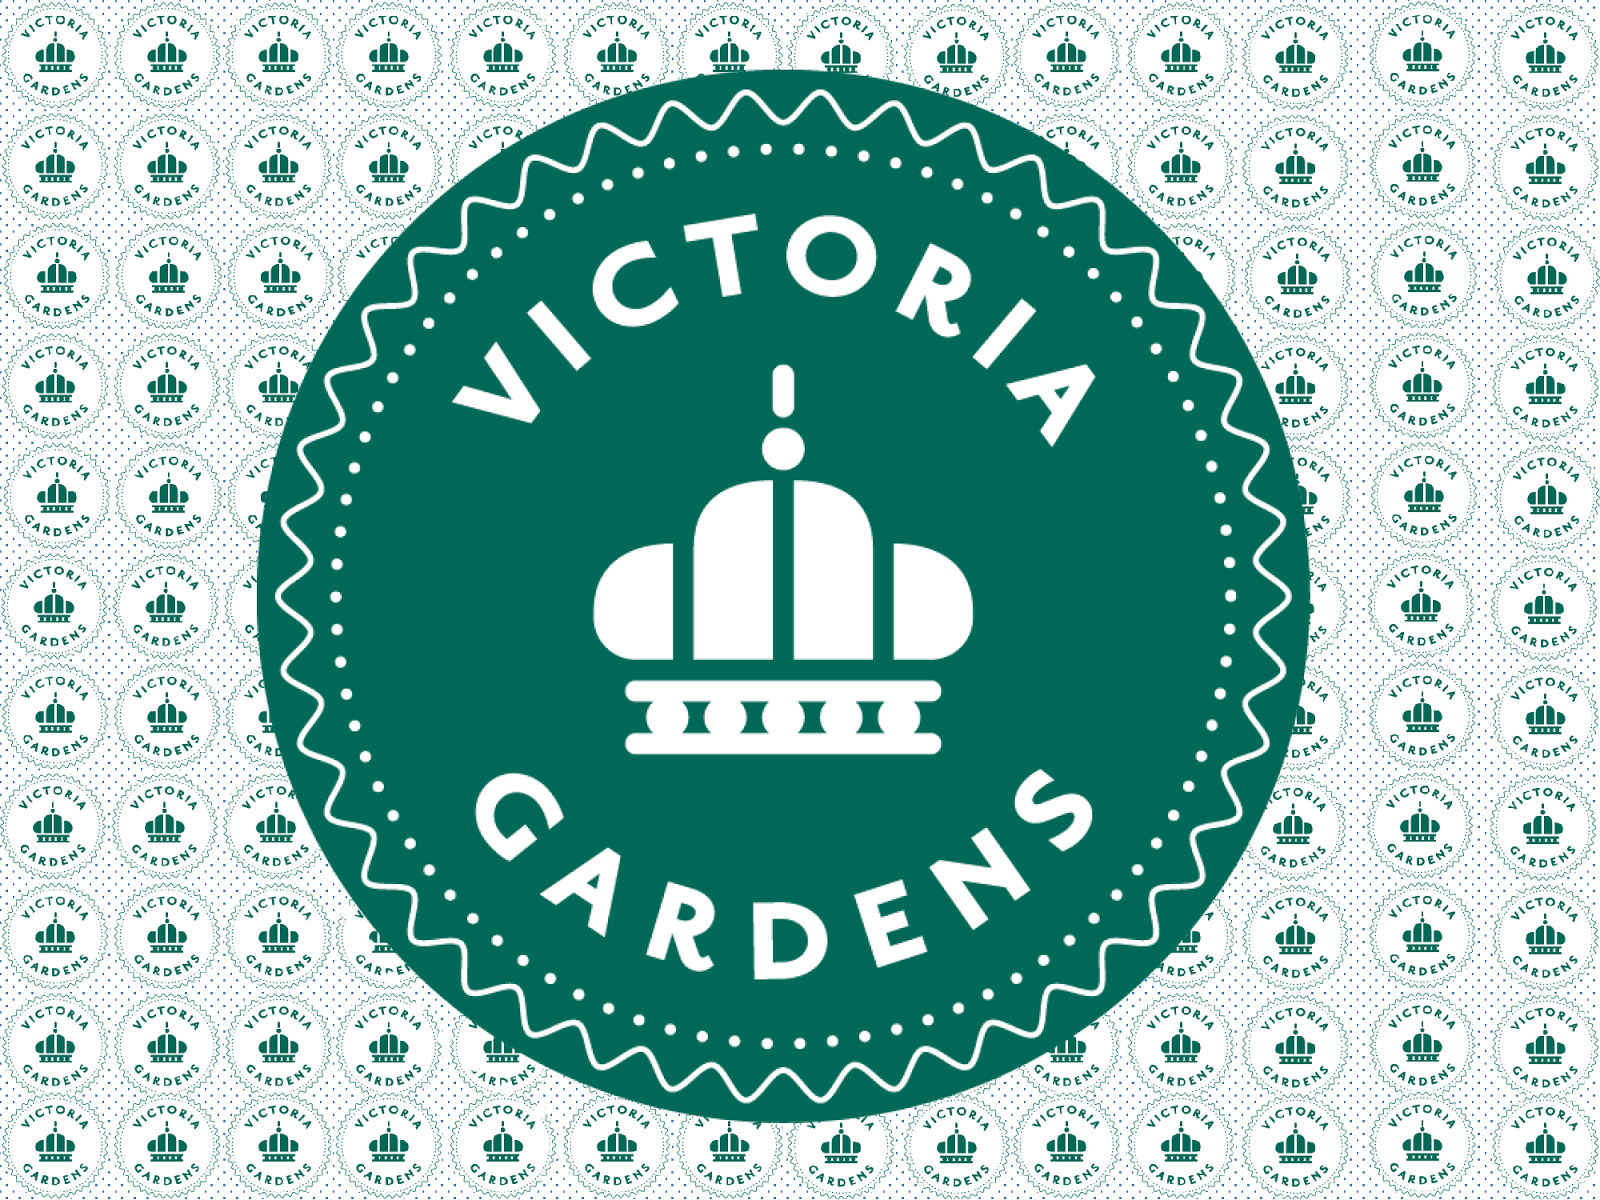 Victoria Gardens Community Mall